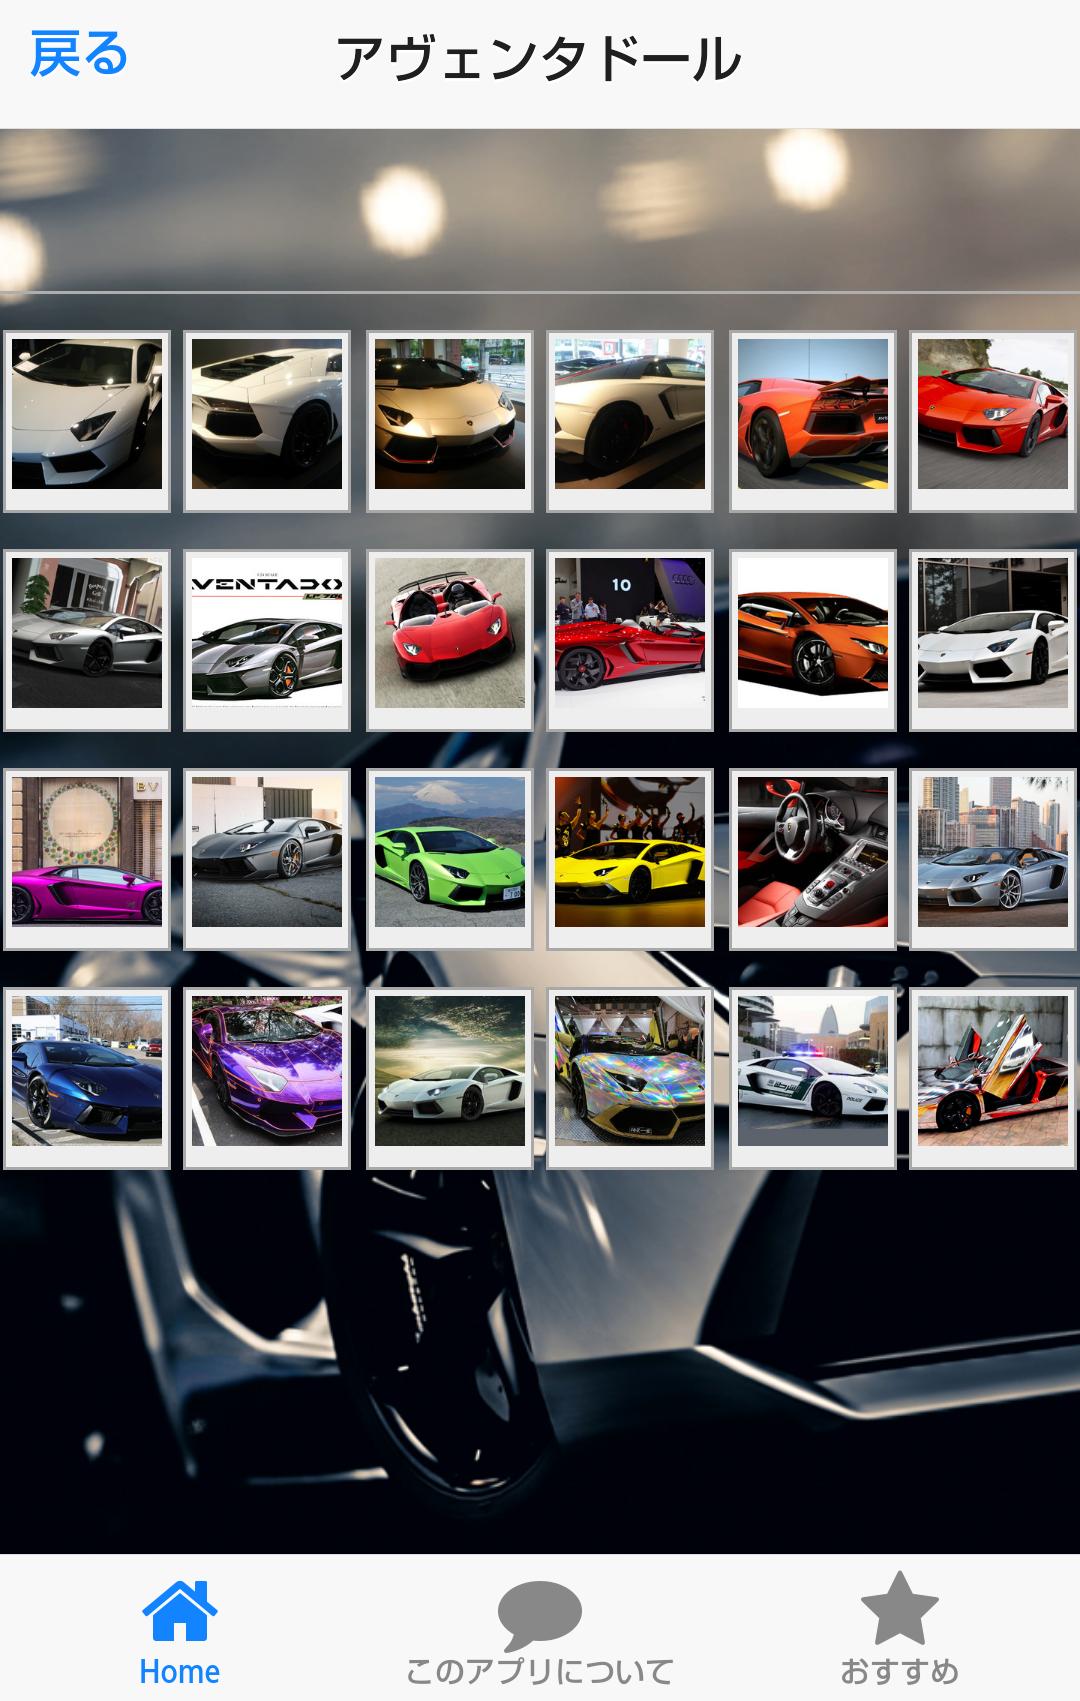 高級車の壁紙集forランボルギーニ Lamborghini For Android Apk Download